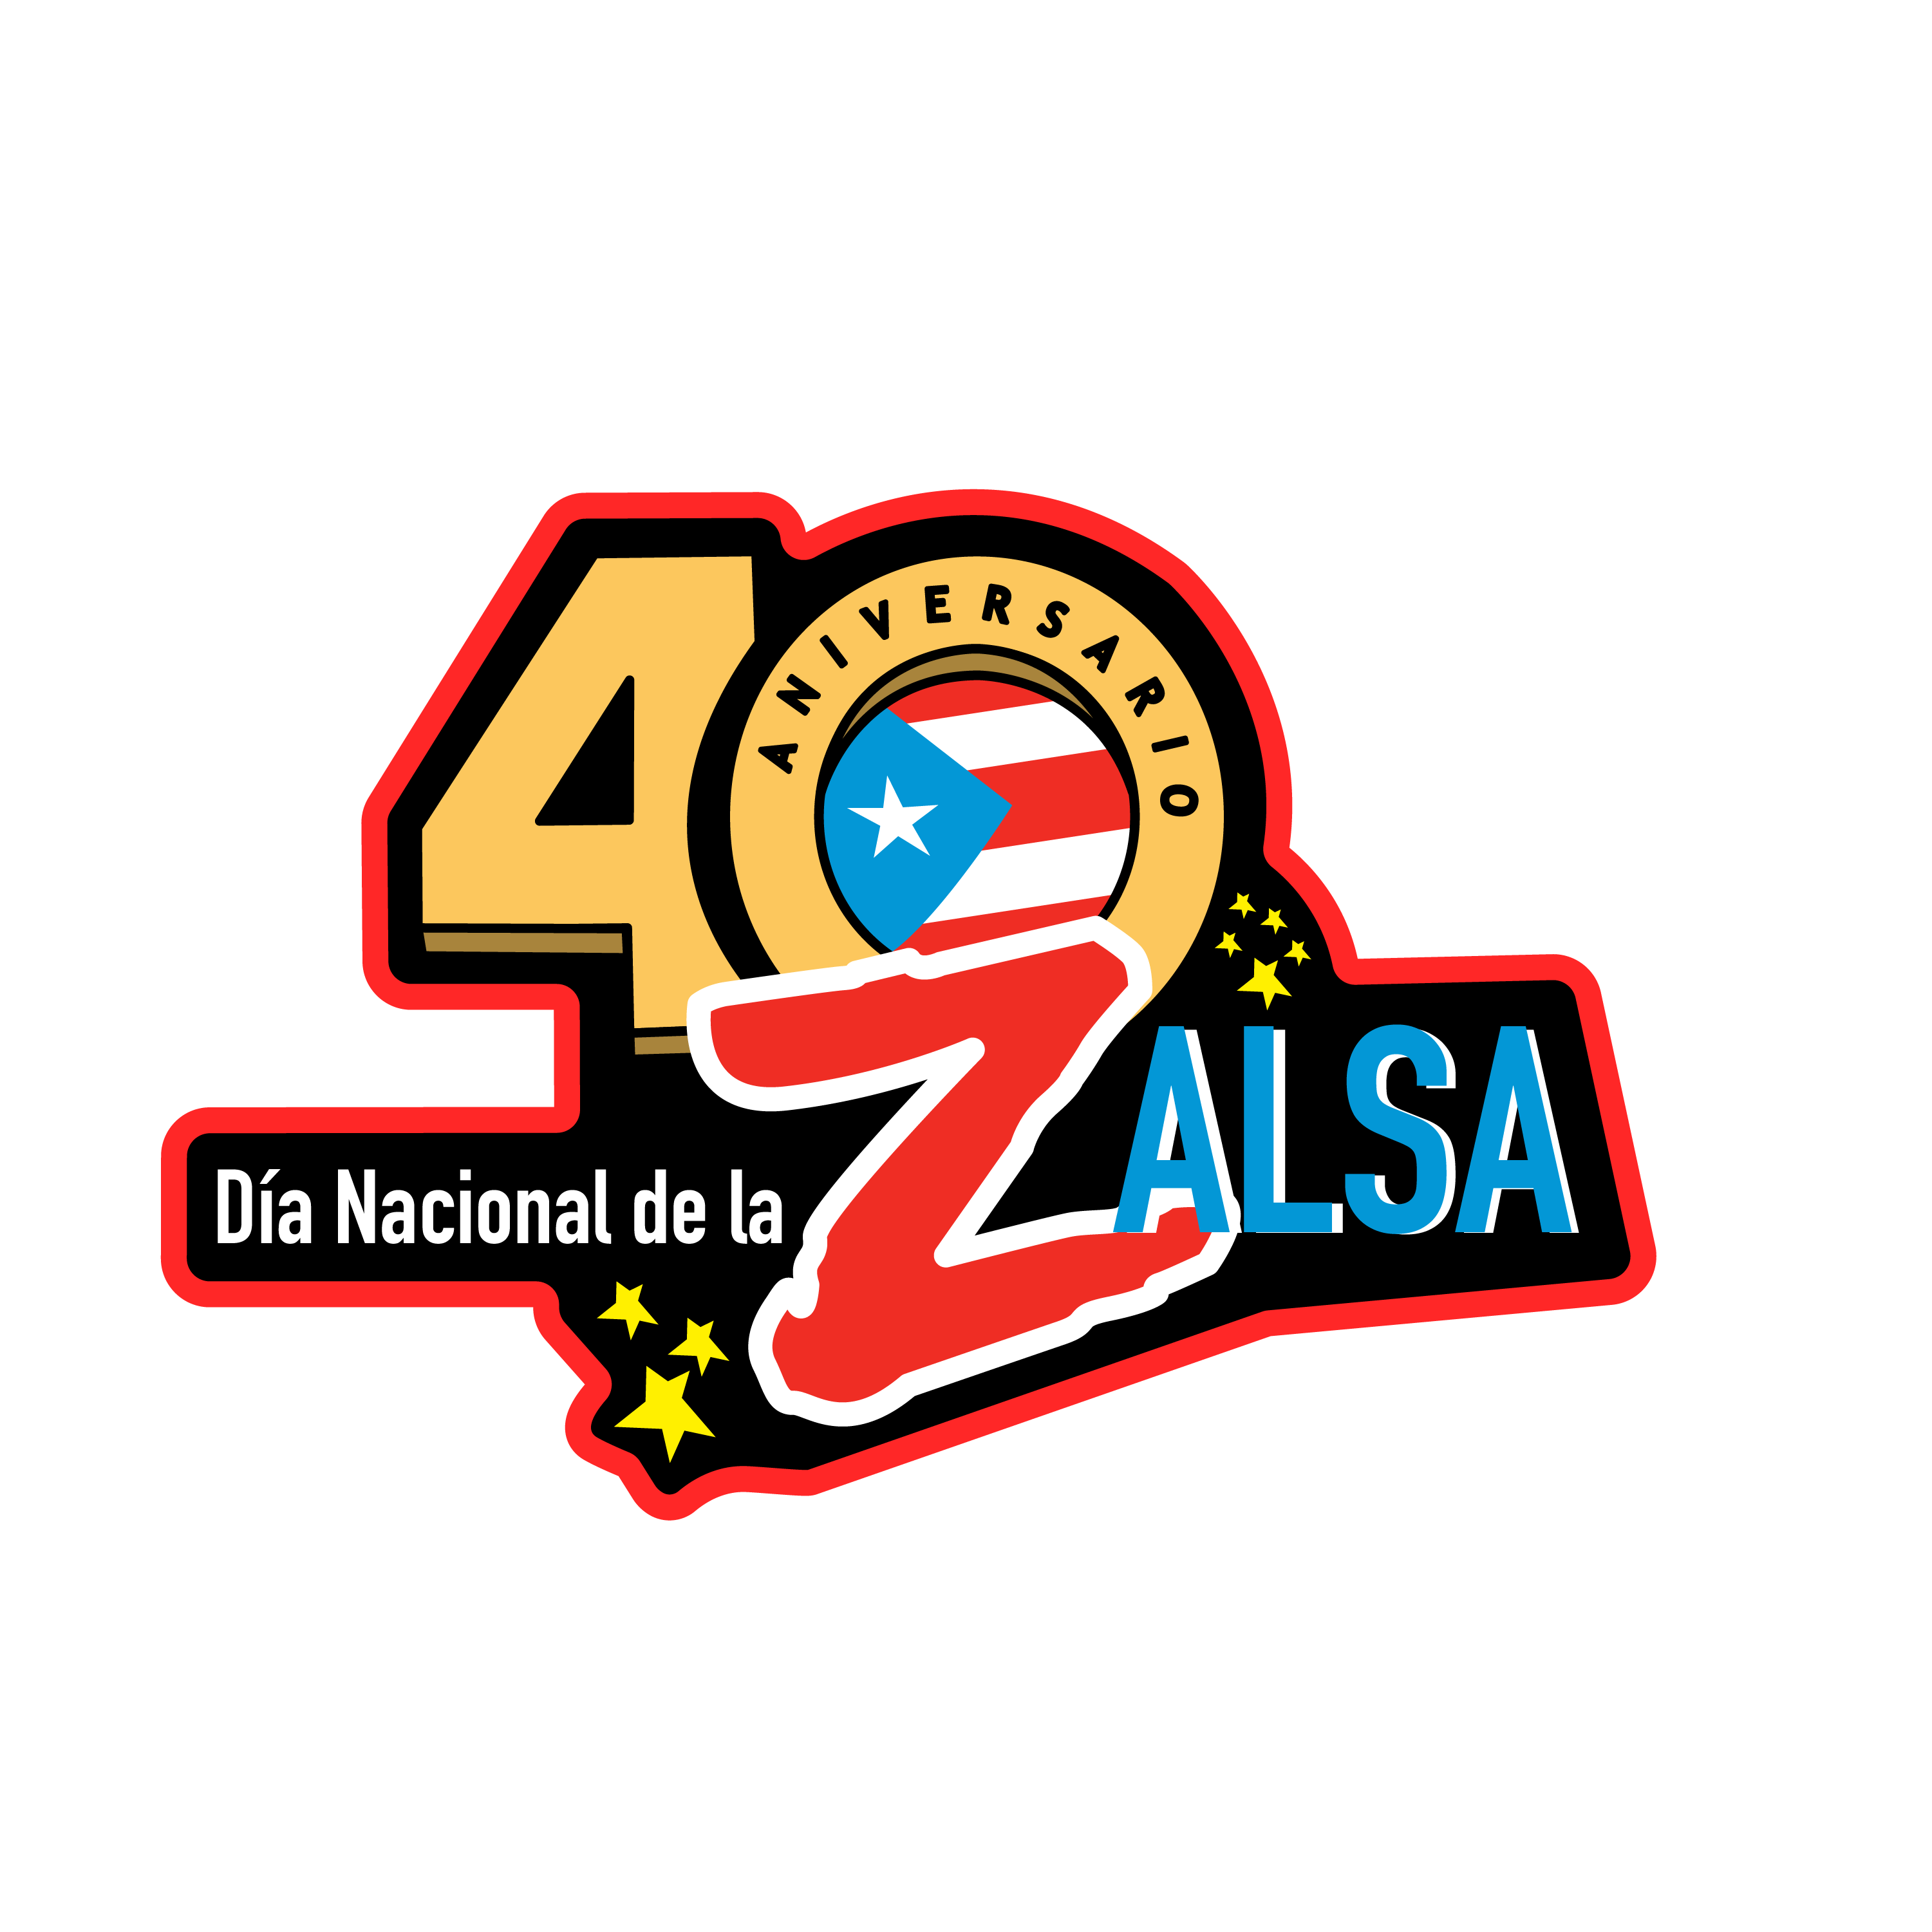 40 años del "Día Nacional de la Zalsa" Patch